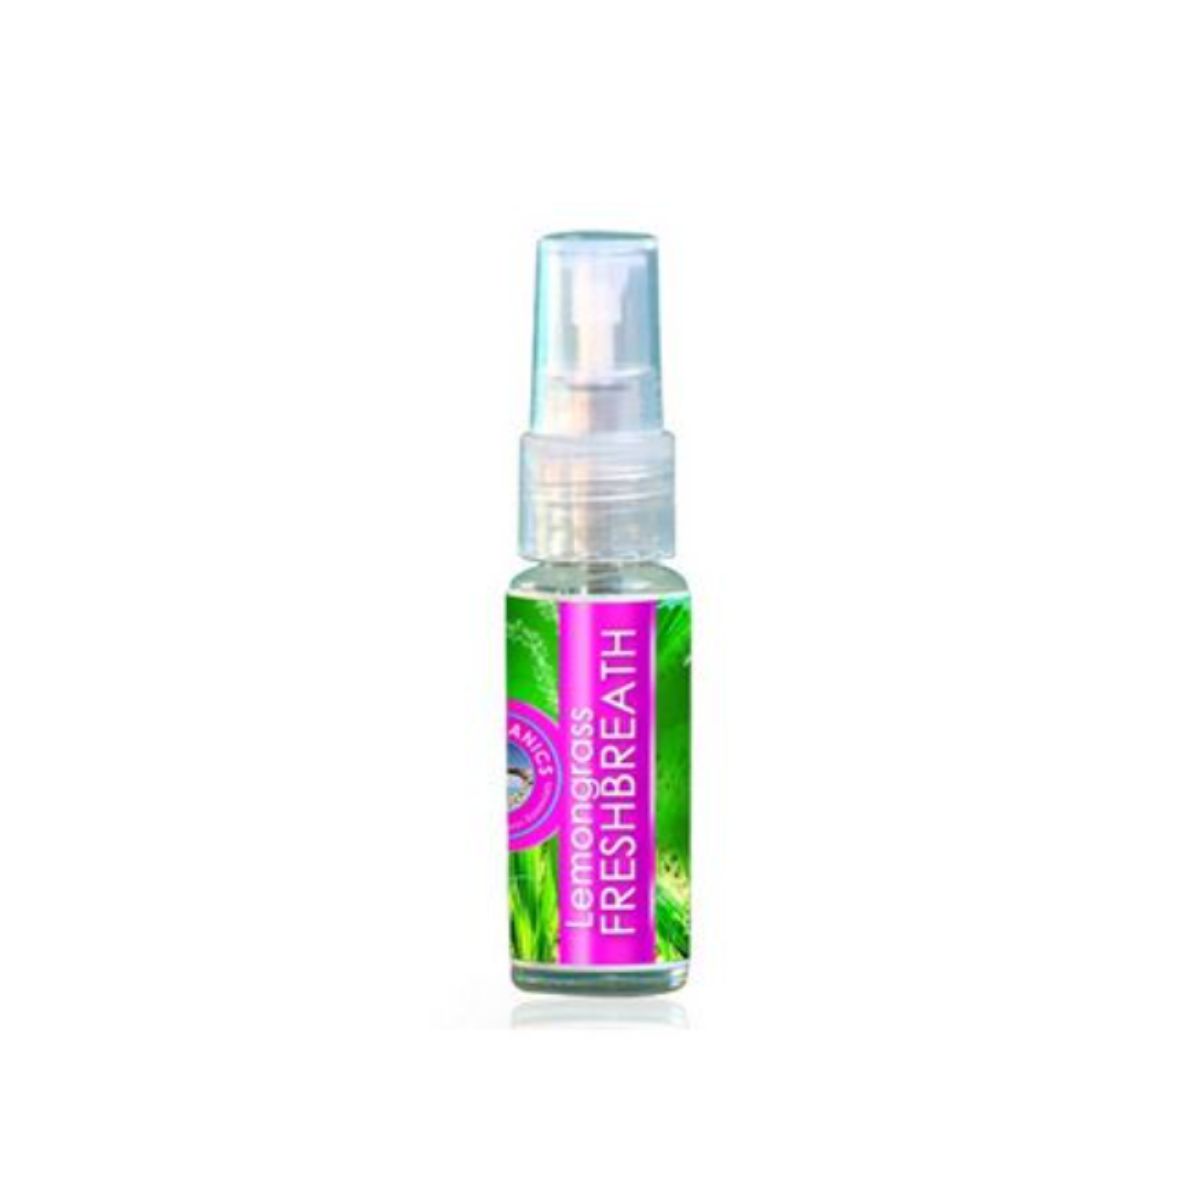 Lemongrass Breath Freshener Spray